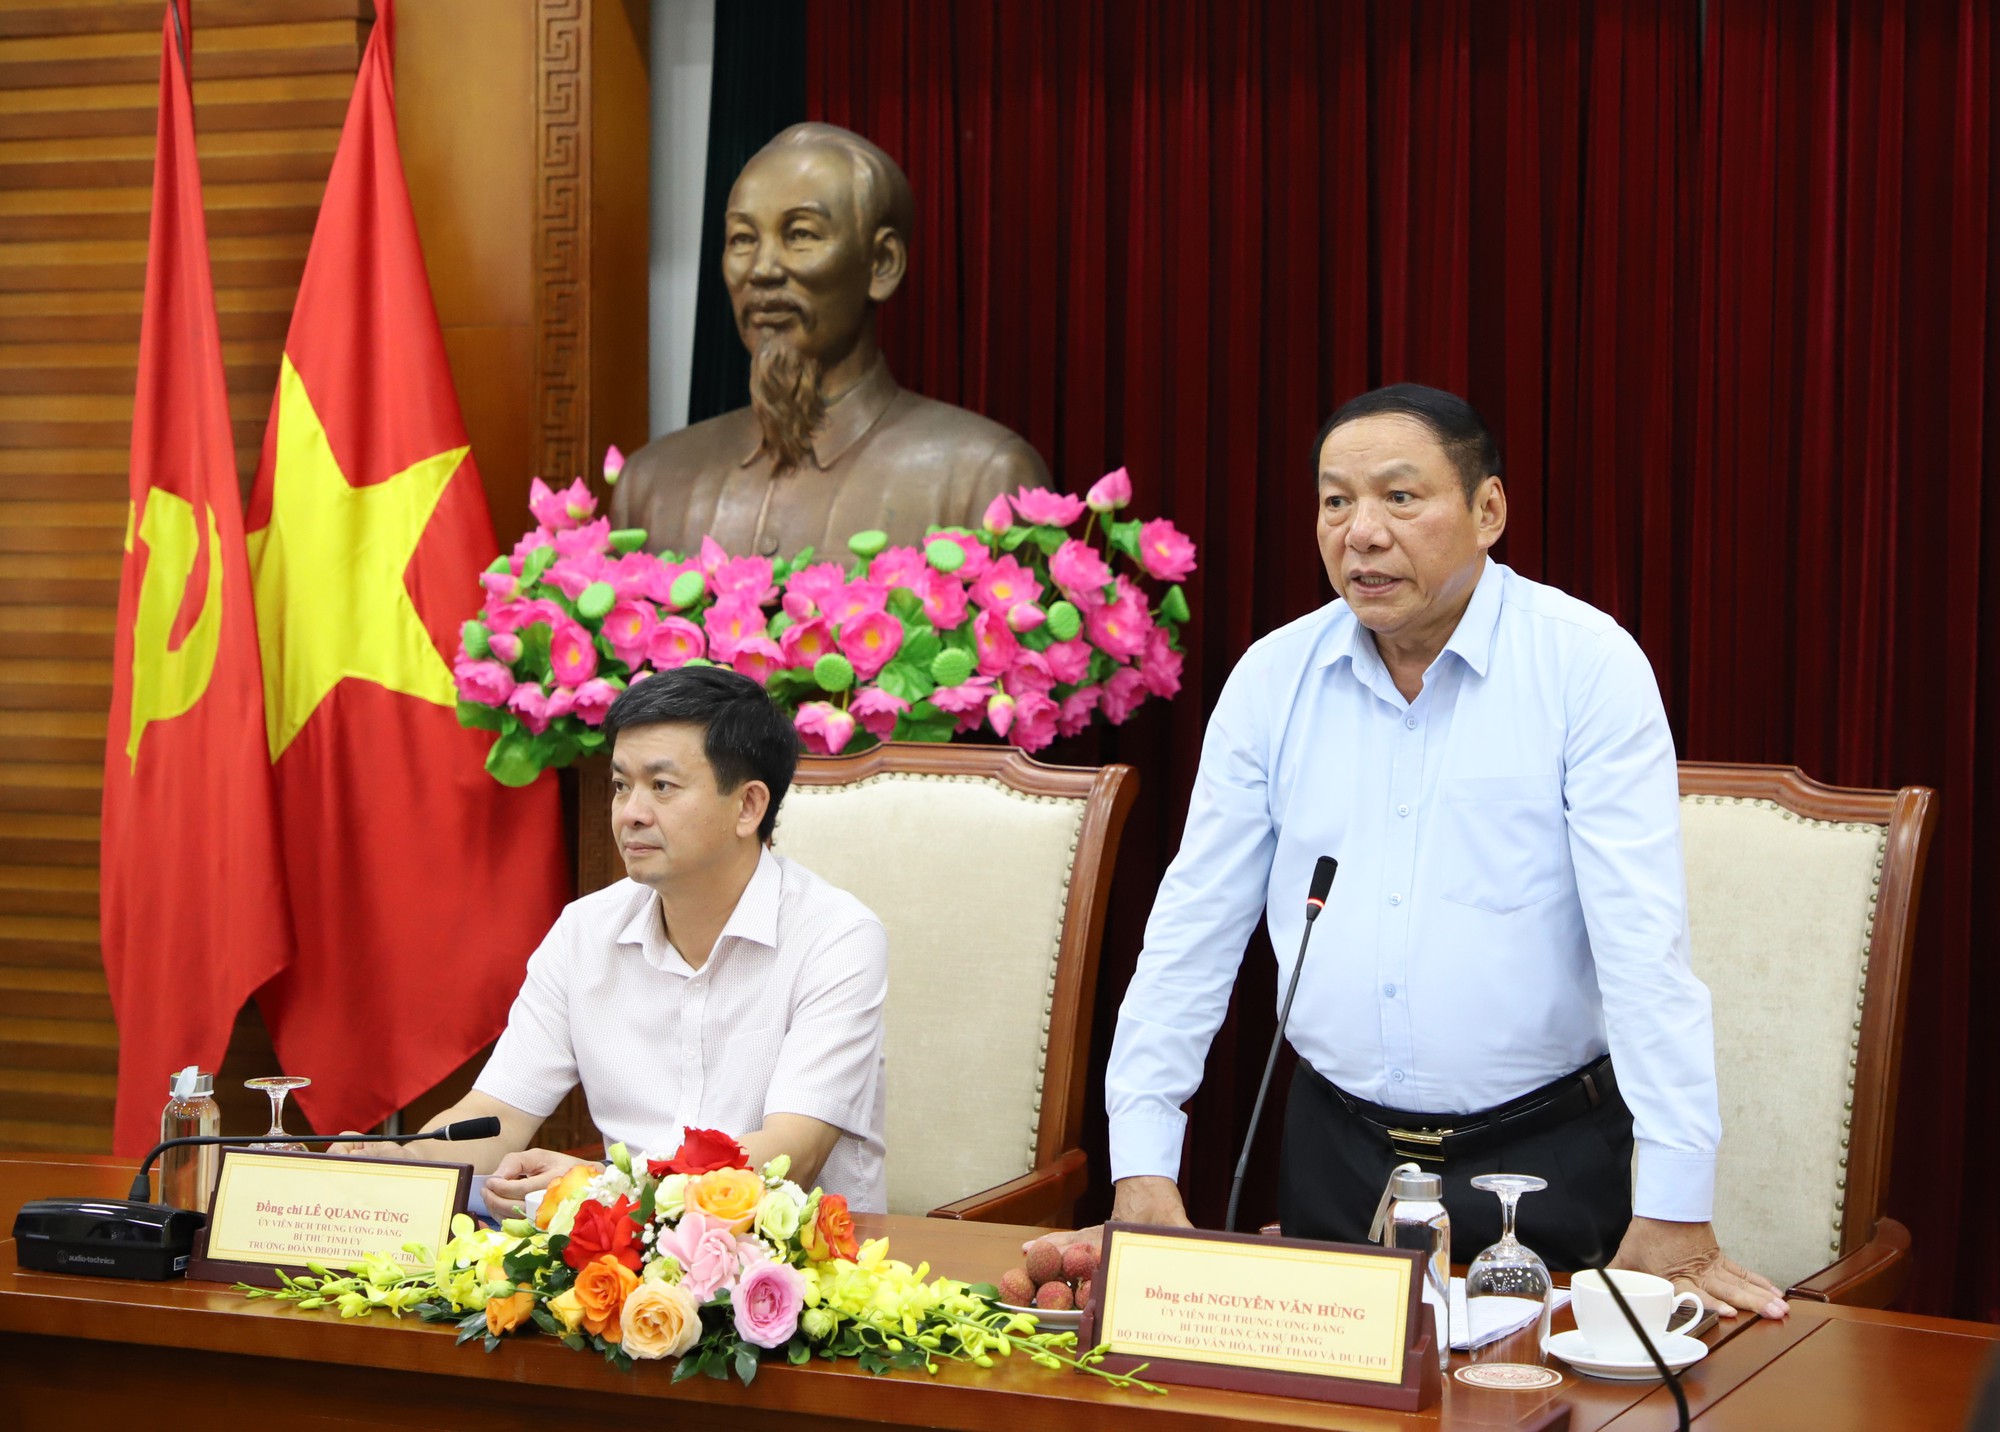 Bộ trưởng Nguyễn Văn Hùng: Nhân lên sức mạnh từ văn hóa và bằng văn hóa để phát triển tỉnh Quảng Trị - Ảnh 4.